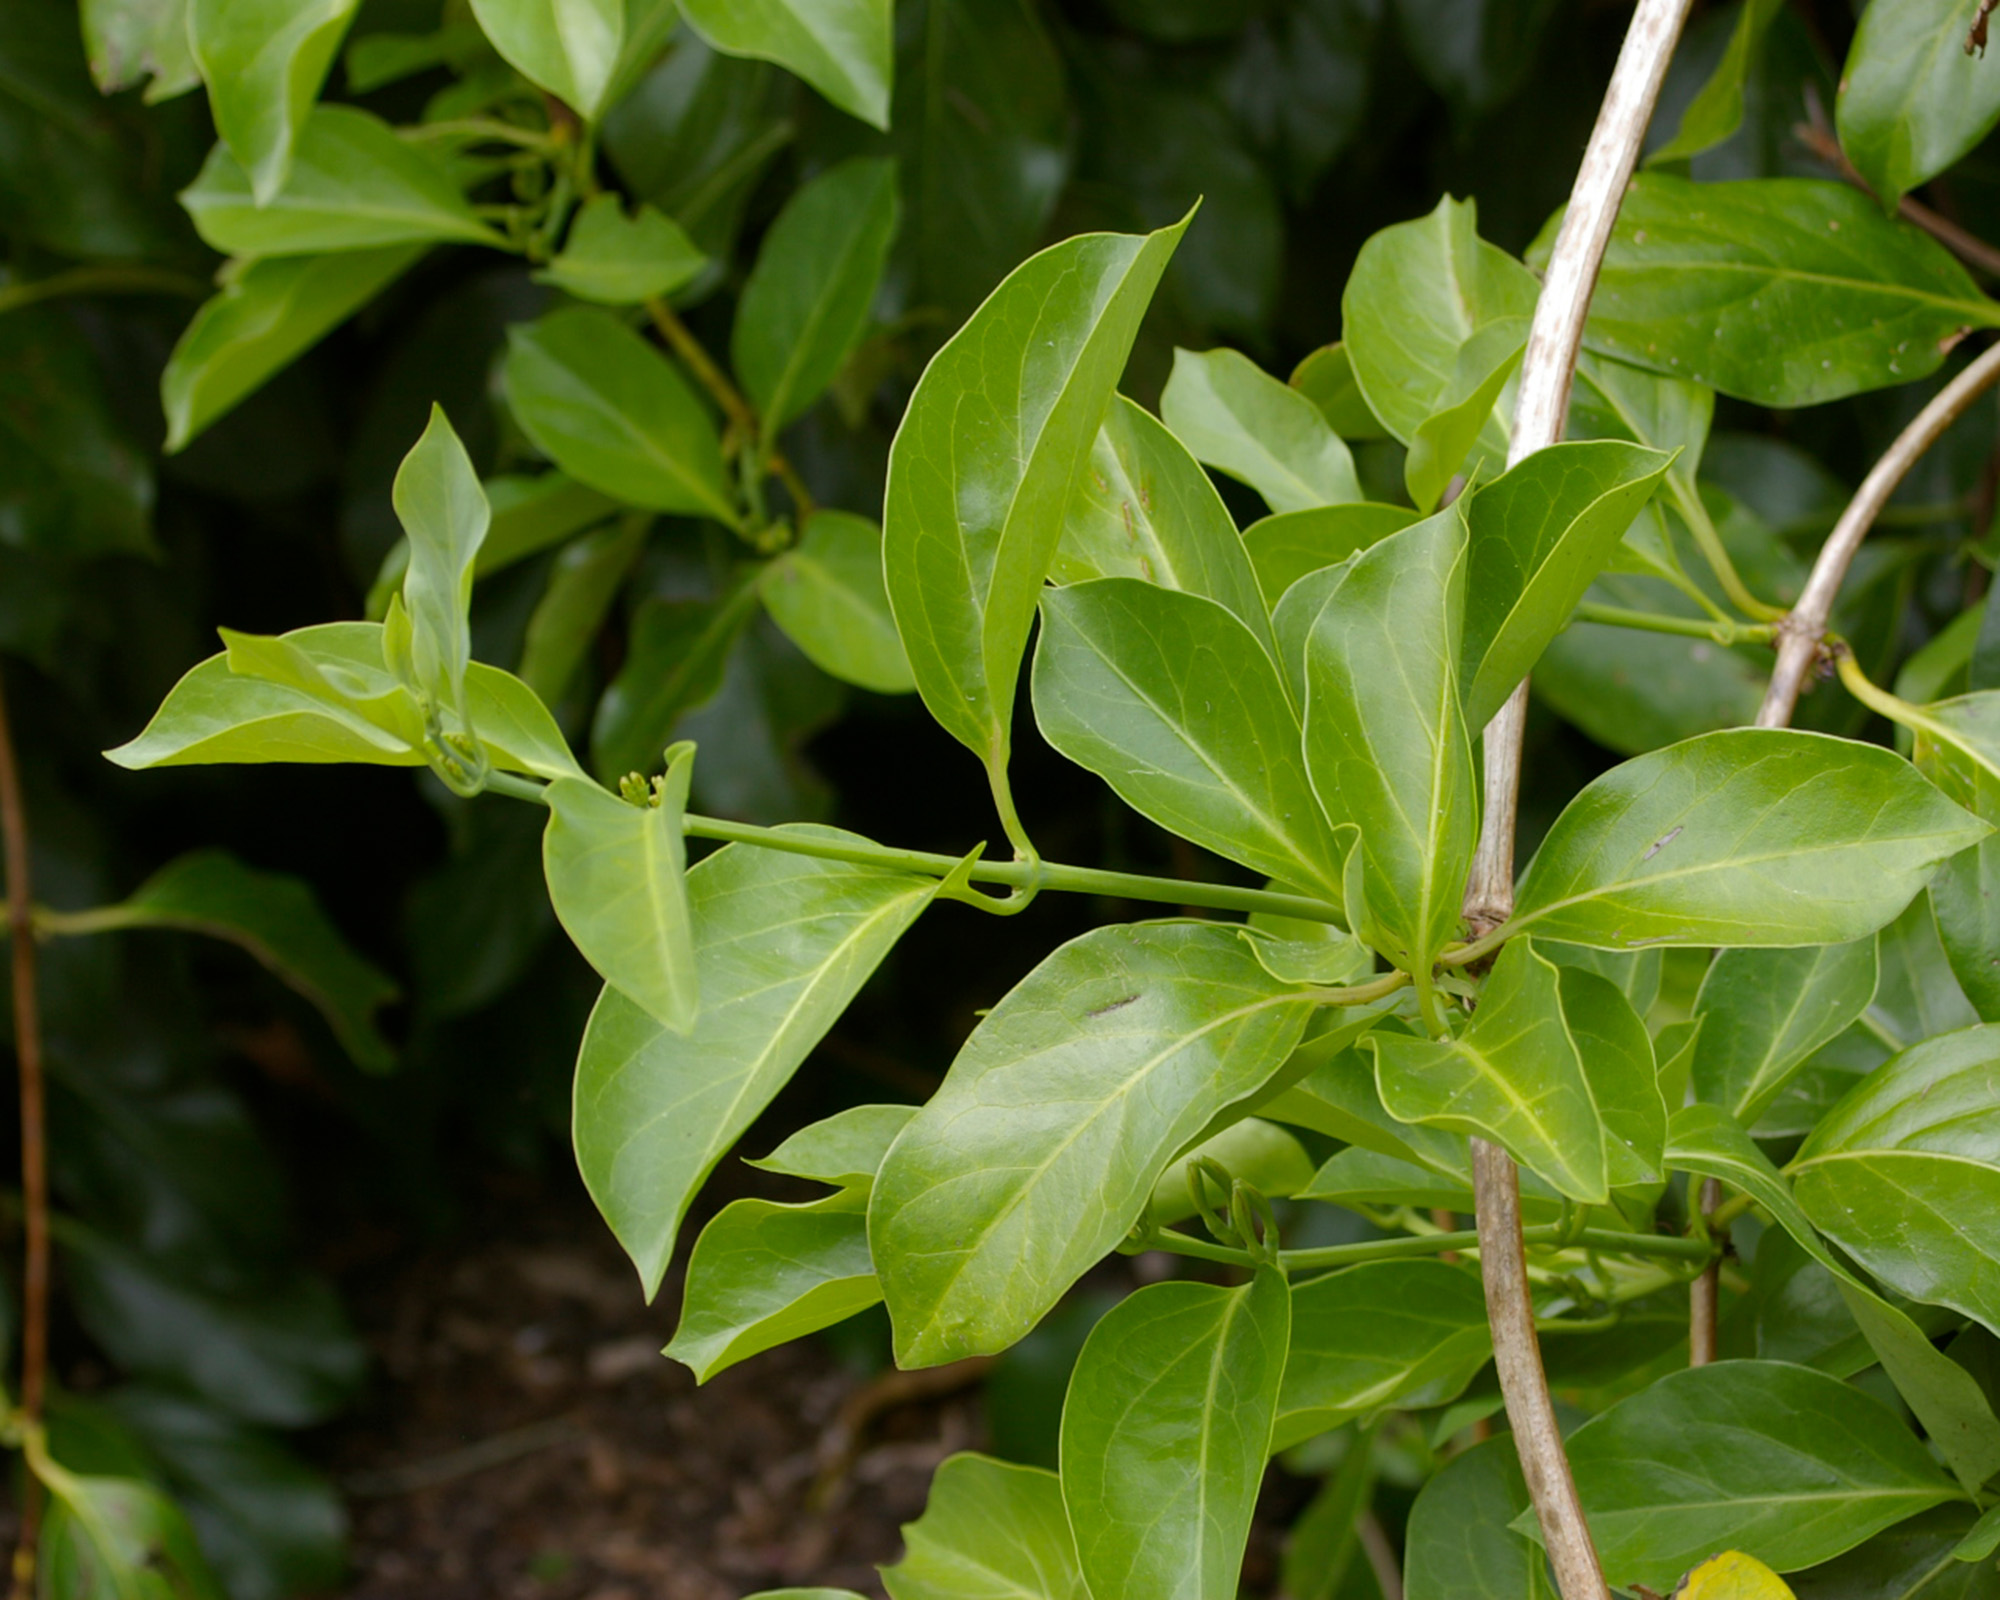 Lonicera hildebrandiana Giant Burmese Honeysuckle - has pairs of deep green leaves